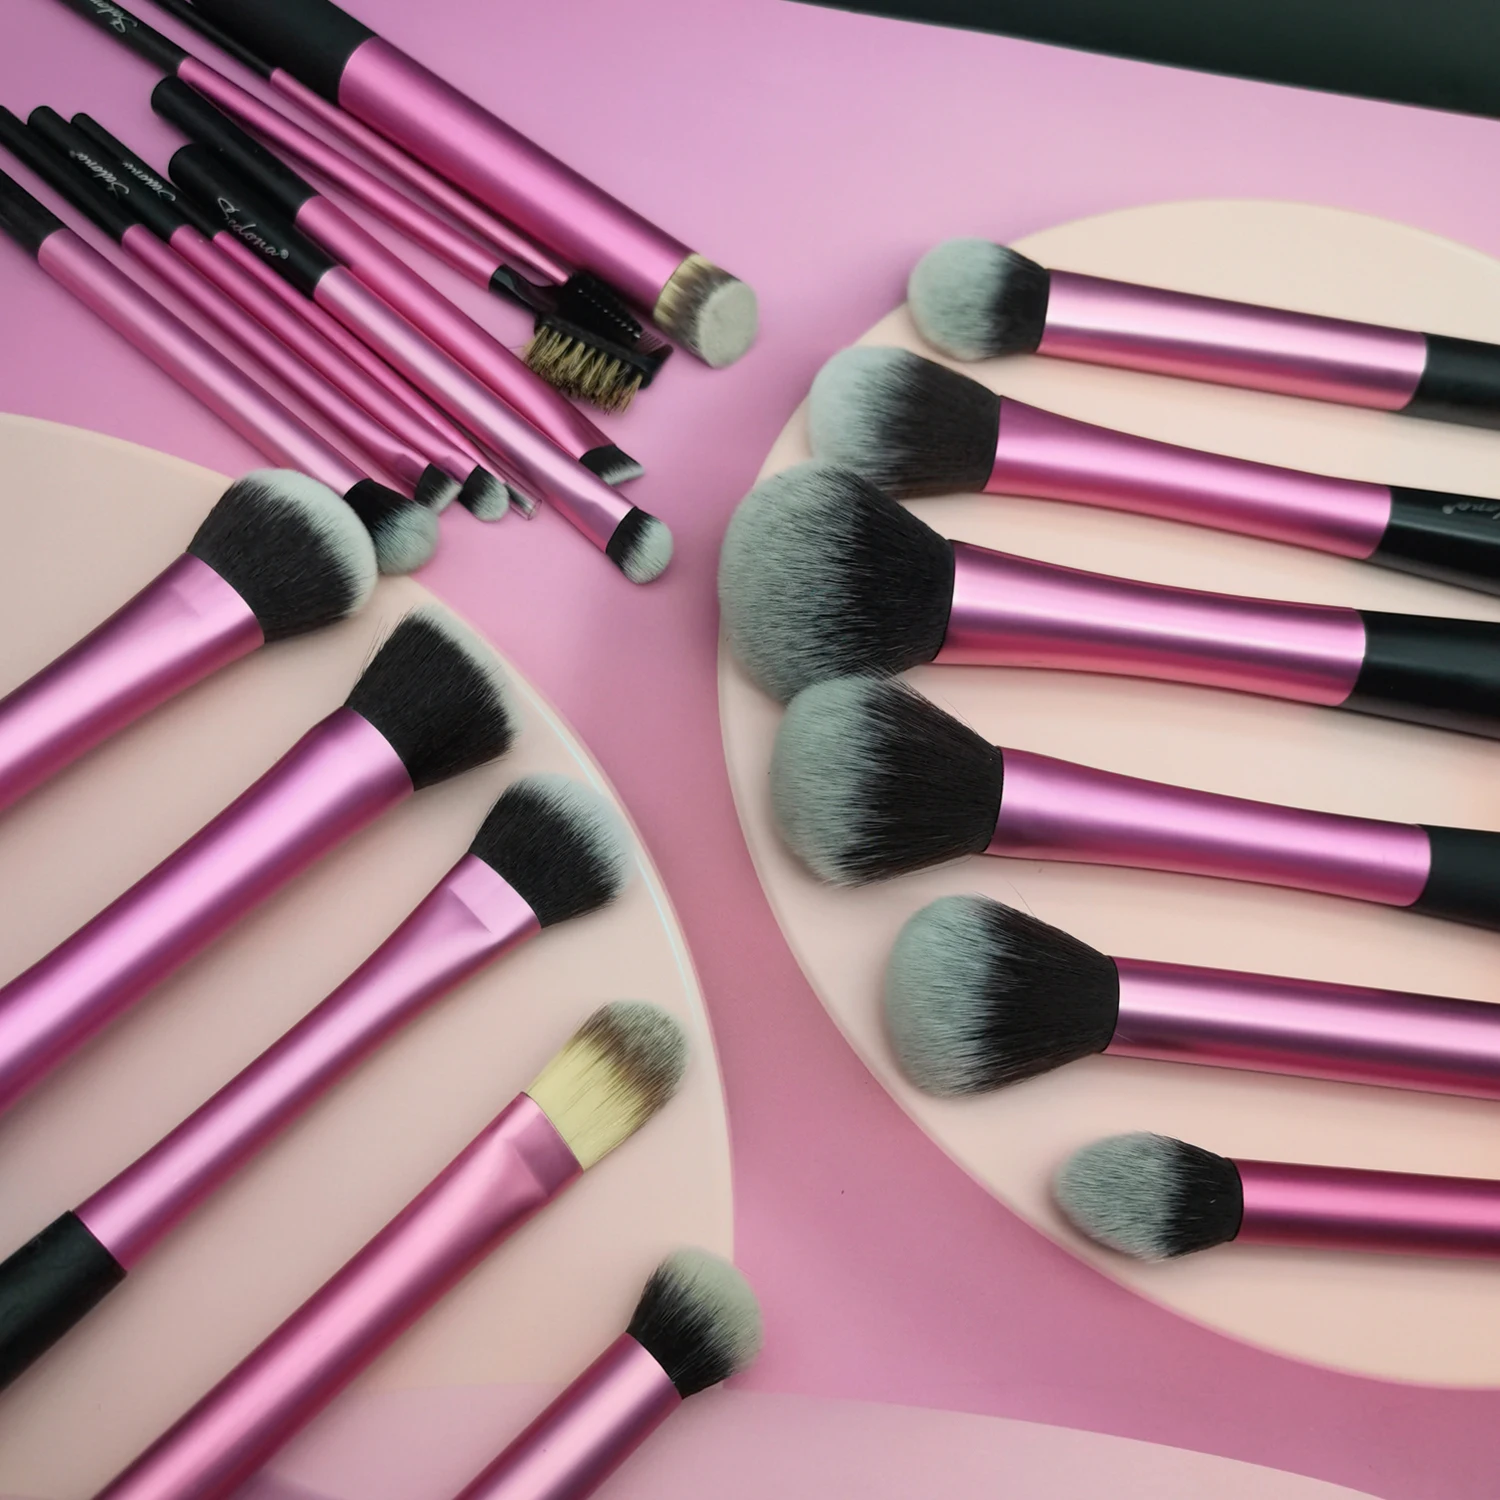 Sedona Makeup Pro Pink Brush Set Powder Blending Eyeliner Eyelash Eyebrow Make up Beauty Cosmetics Brushes -